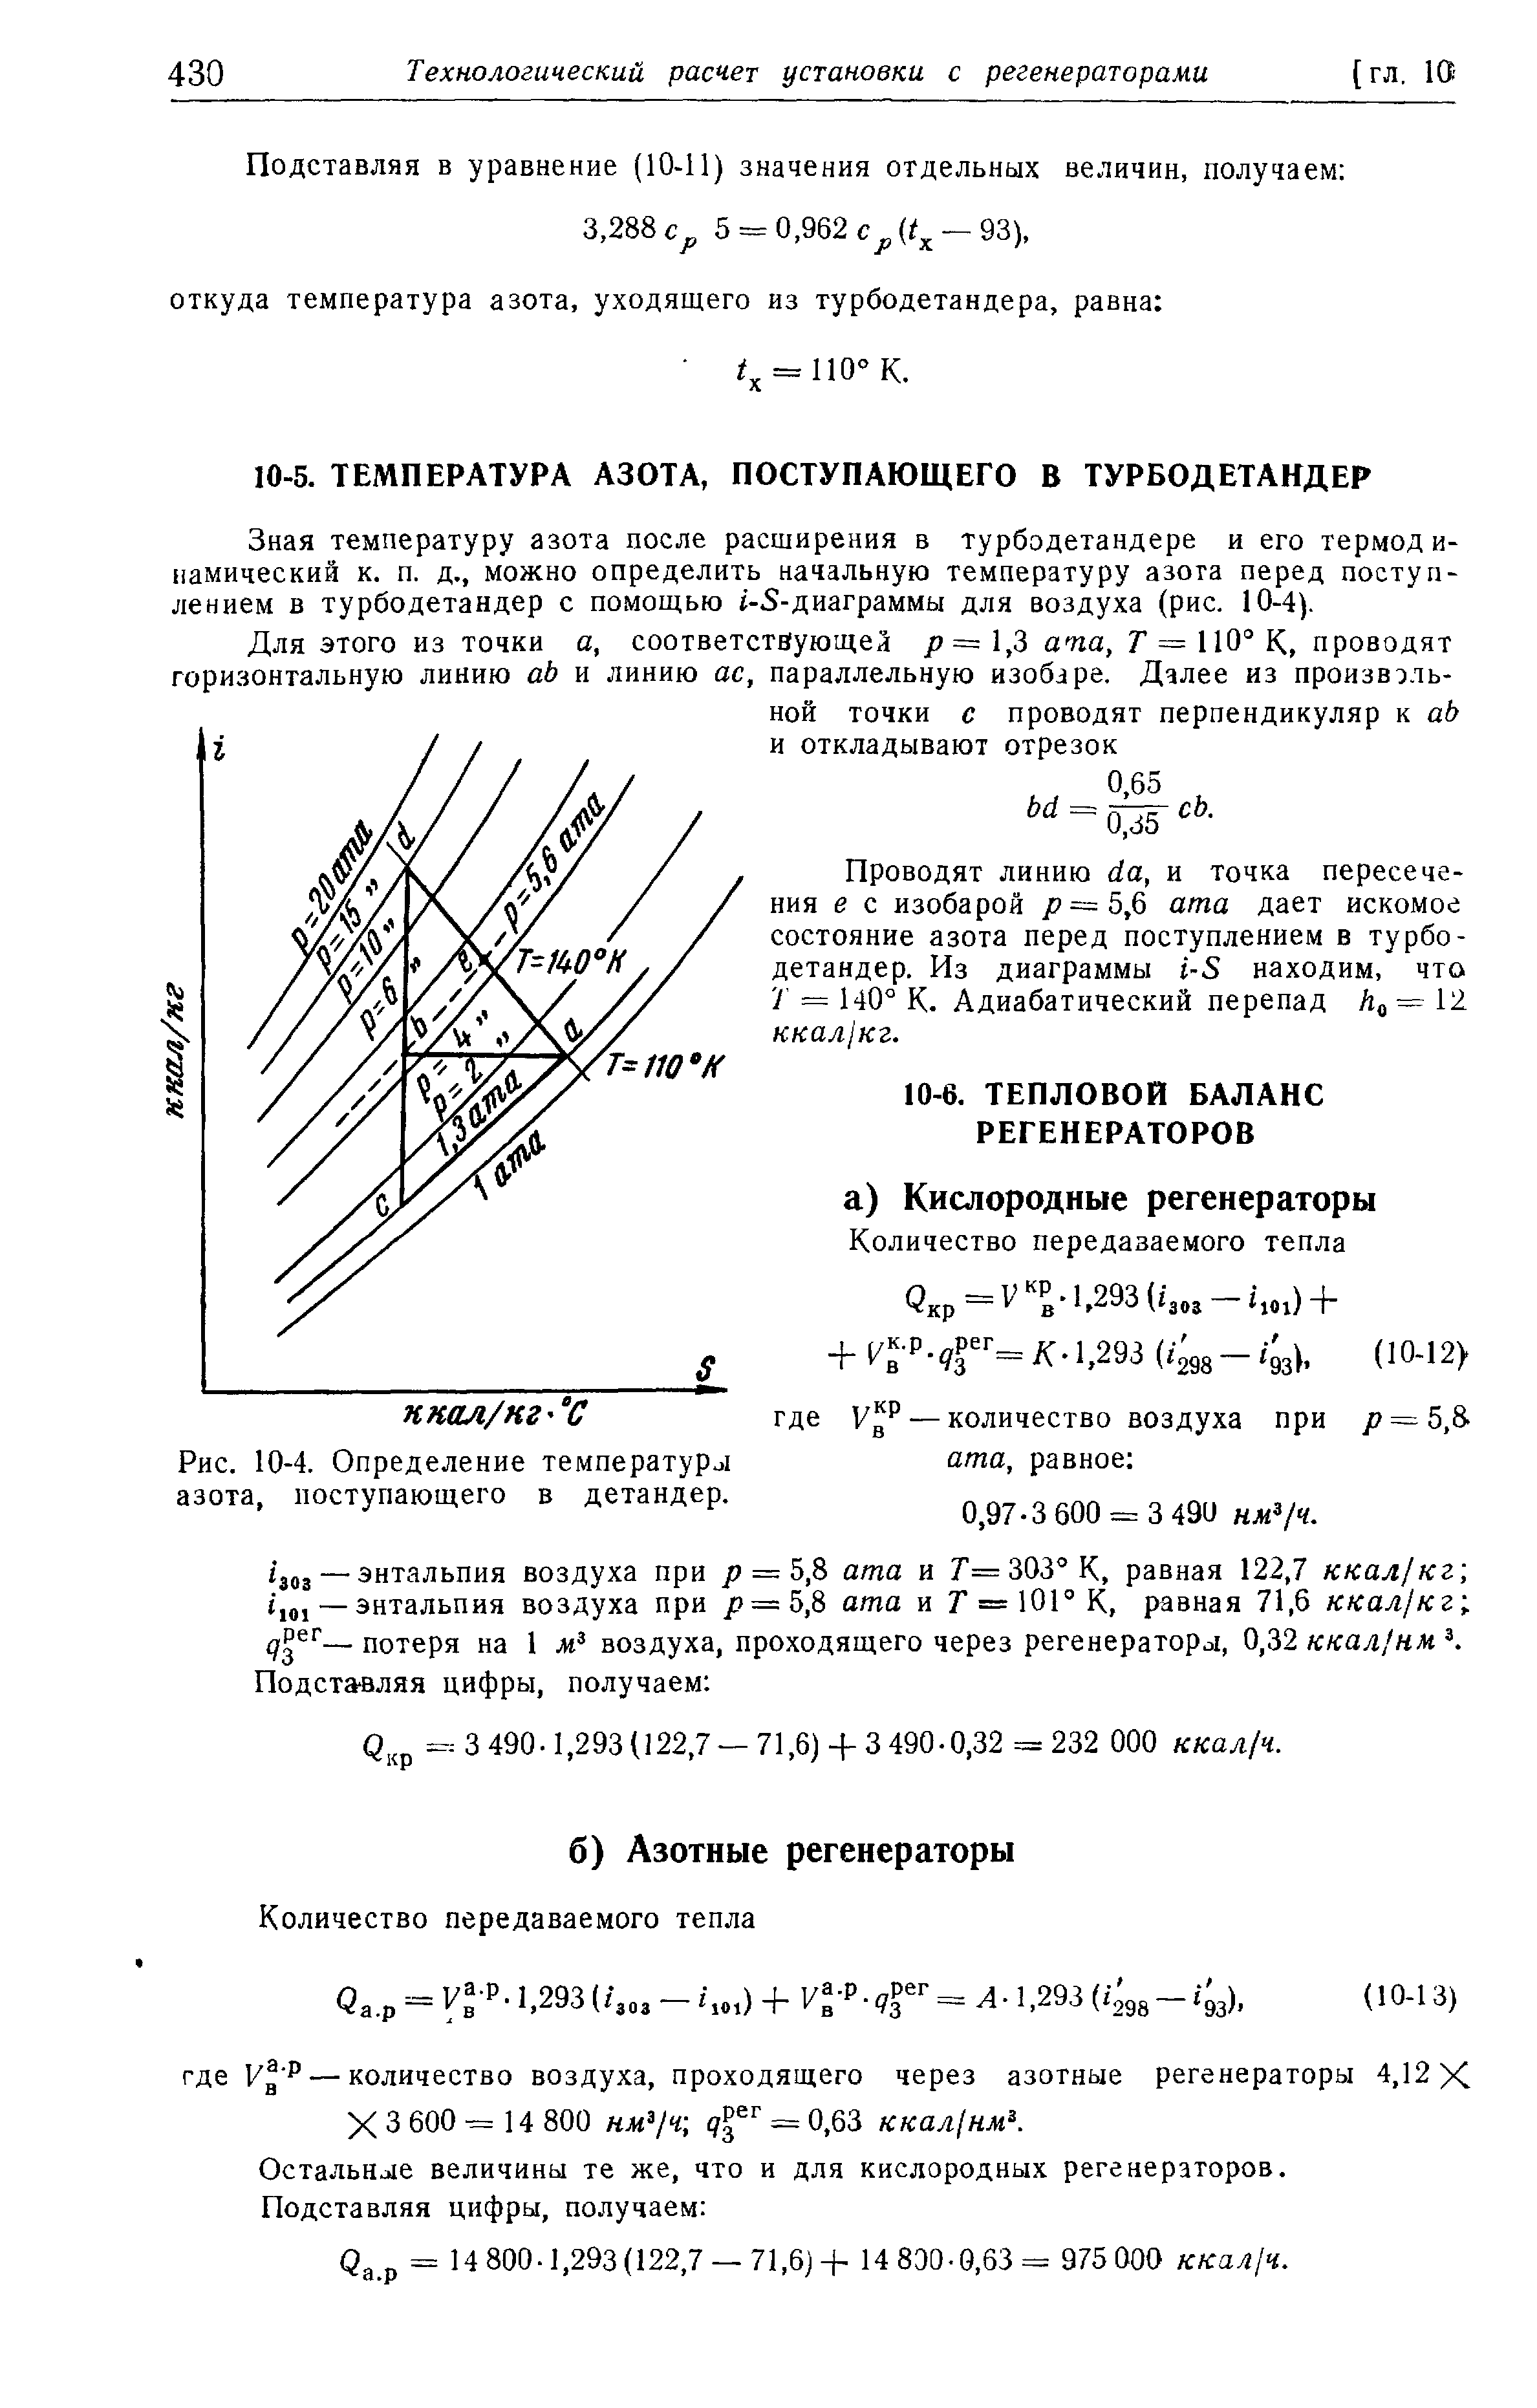 Зная температуру азота после расширения в турбодетандере и его термодинамический к. п. д., можно определить начальную температуру азога перед поступлением в турбодетандер с помощью i-S-диаграммы для воздуха (рис. 10-4).